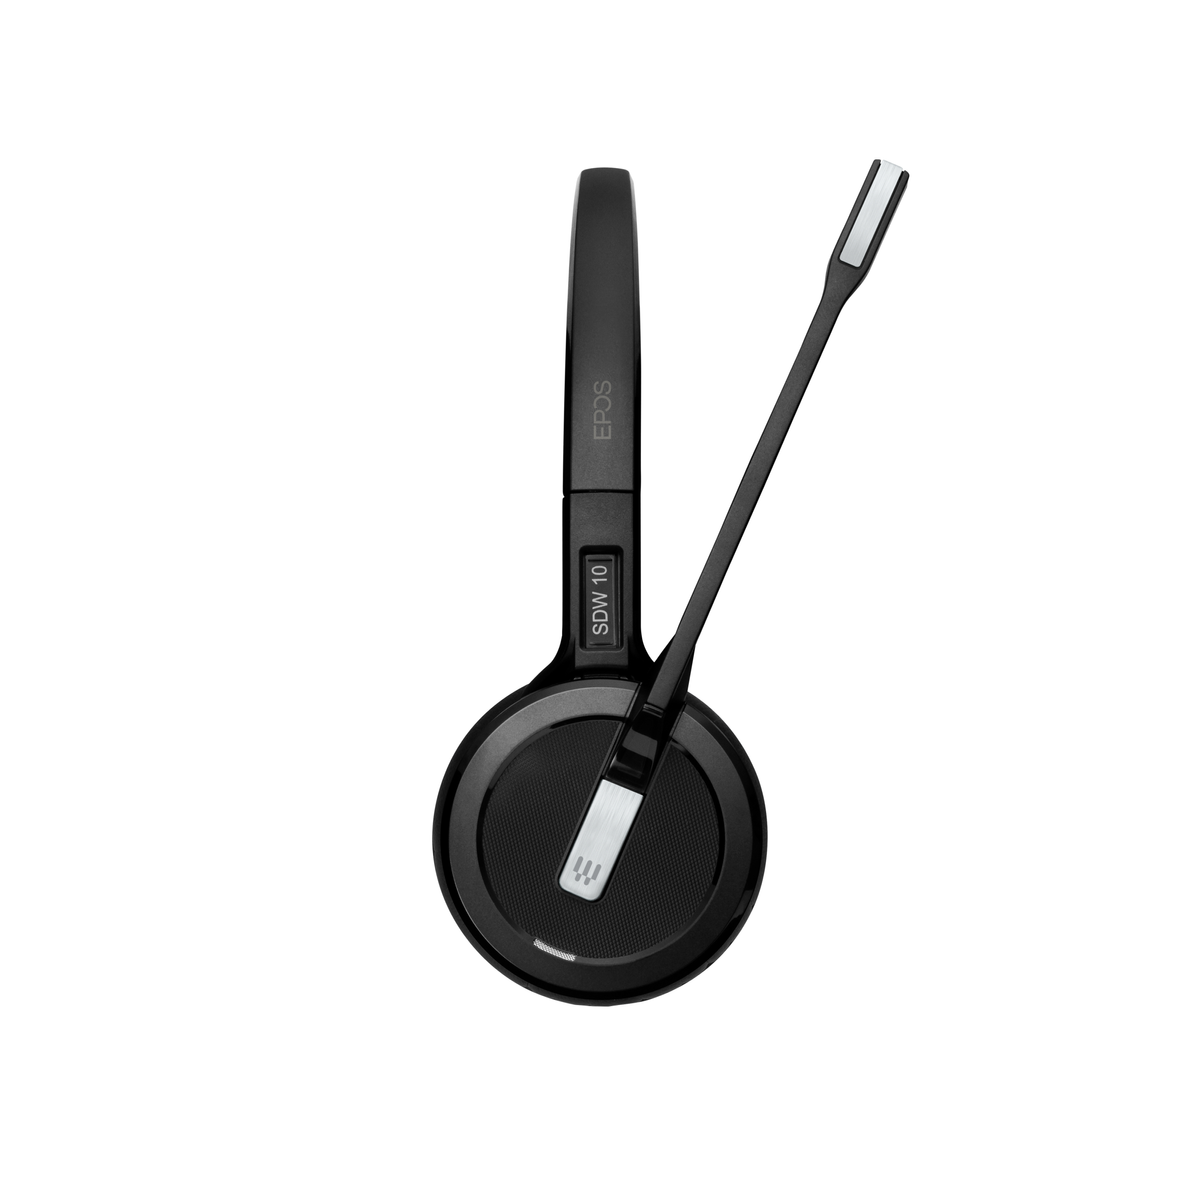 Mono-Headset Schwarz IMPACT On-ear 5013 - EU/UK/AUS, SDW SENNHEISER